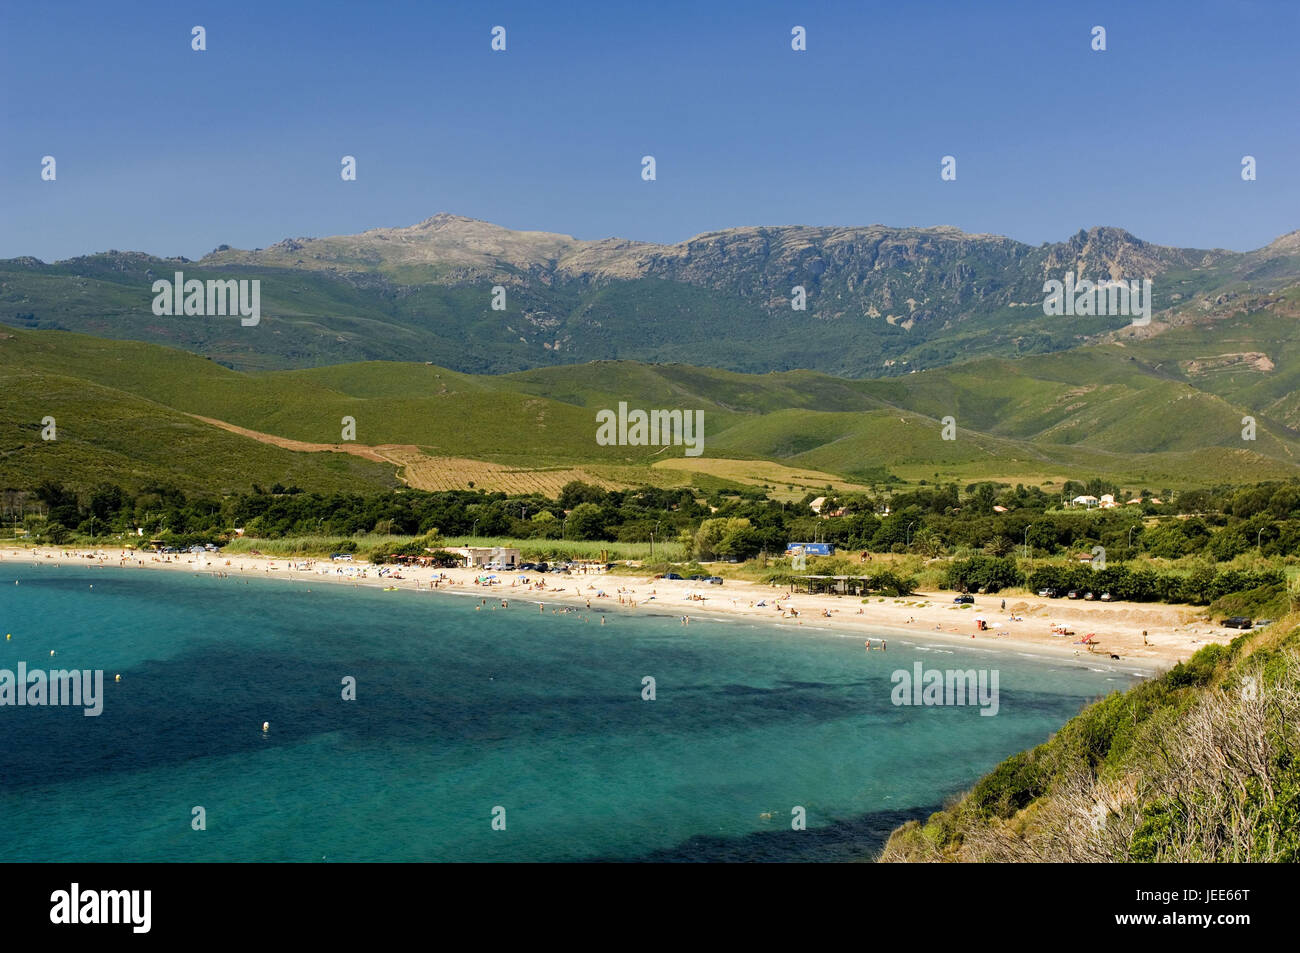 France, Corsica, Cap Corse, bath bay, Stock Photo